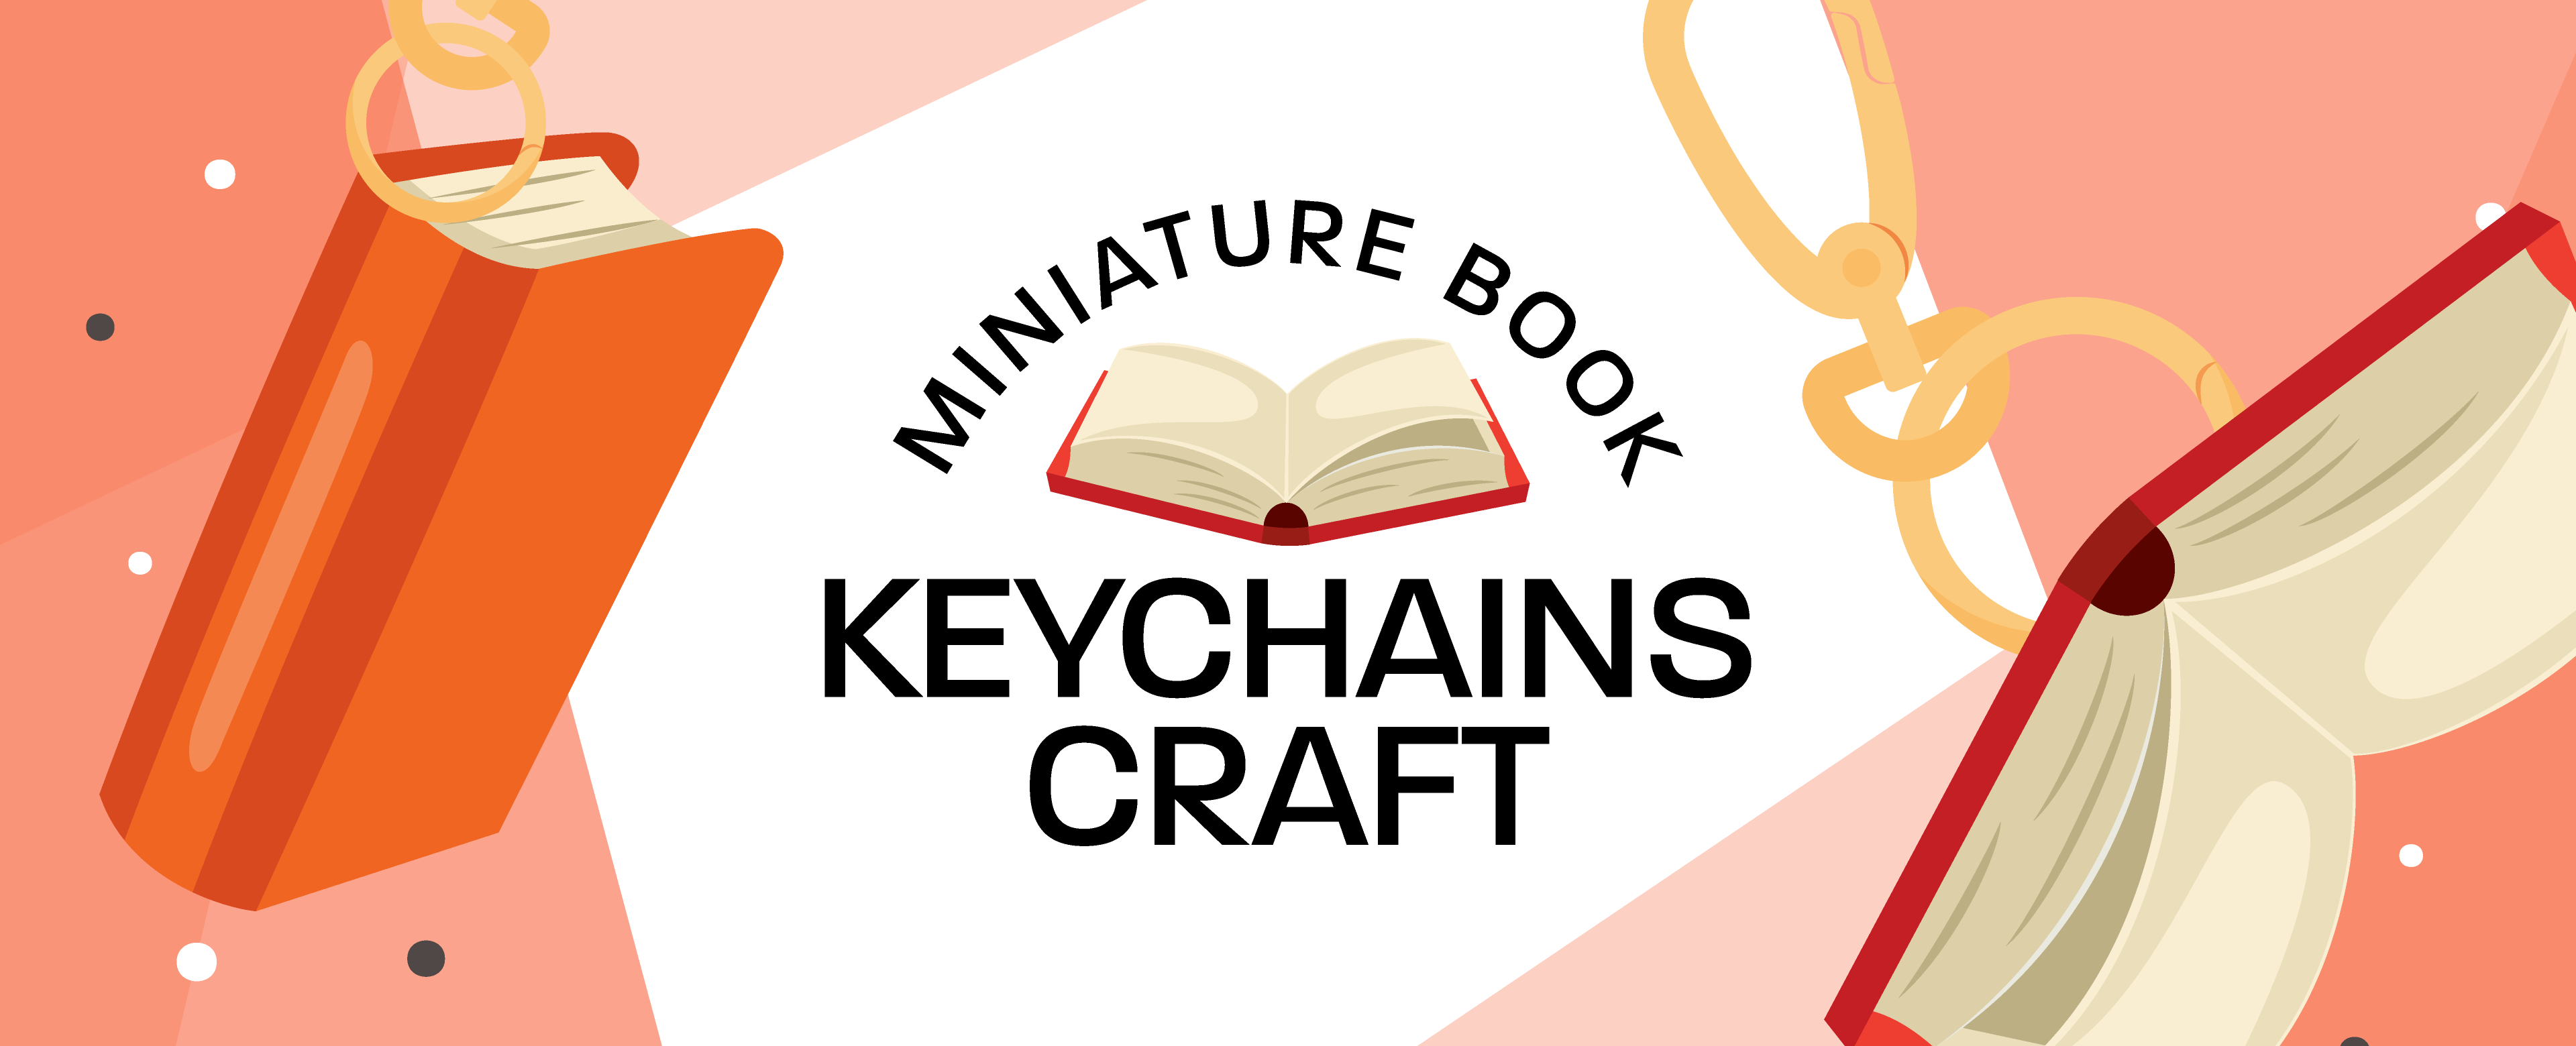 Miniature Book Keychain Craft